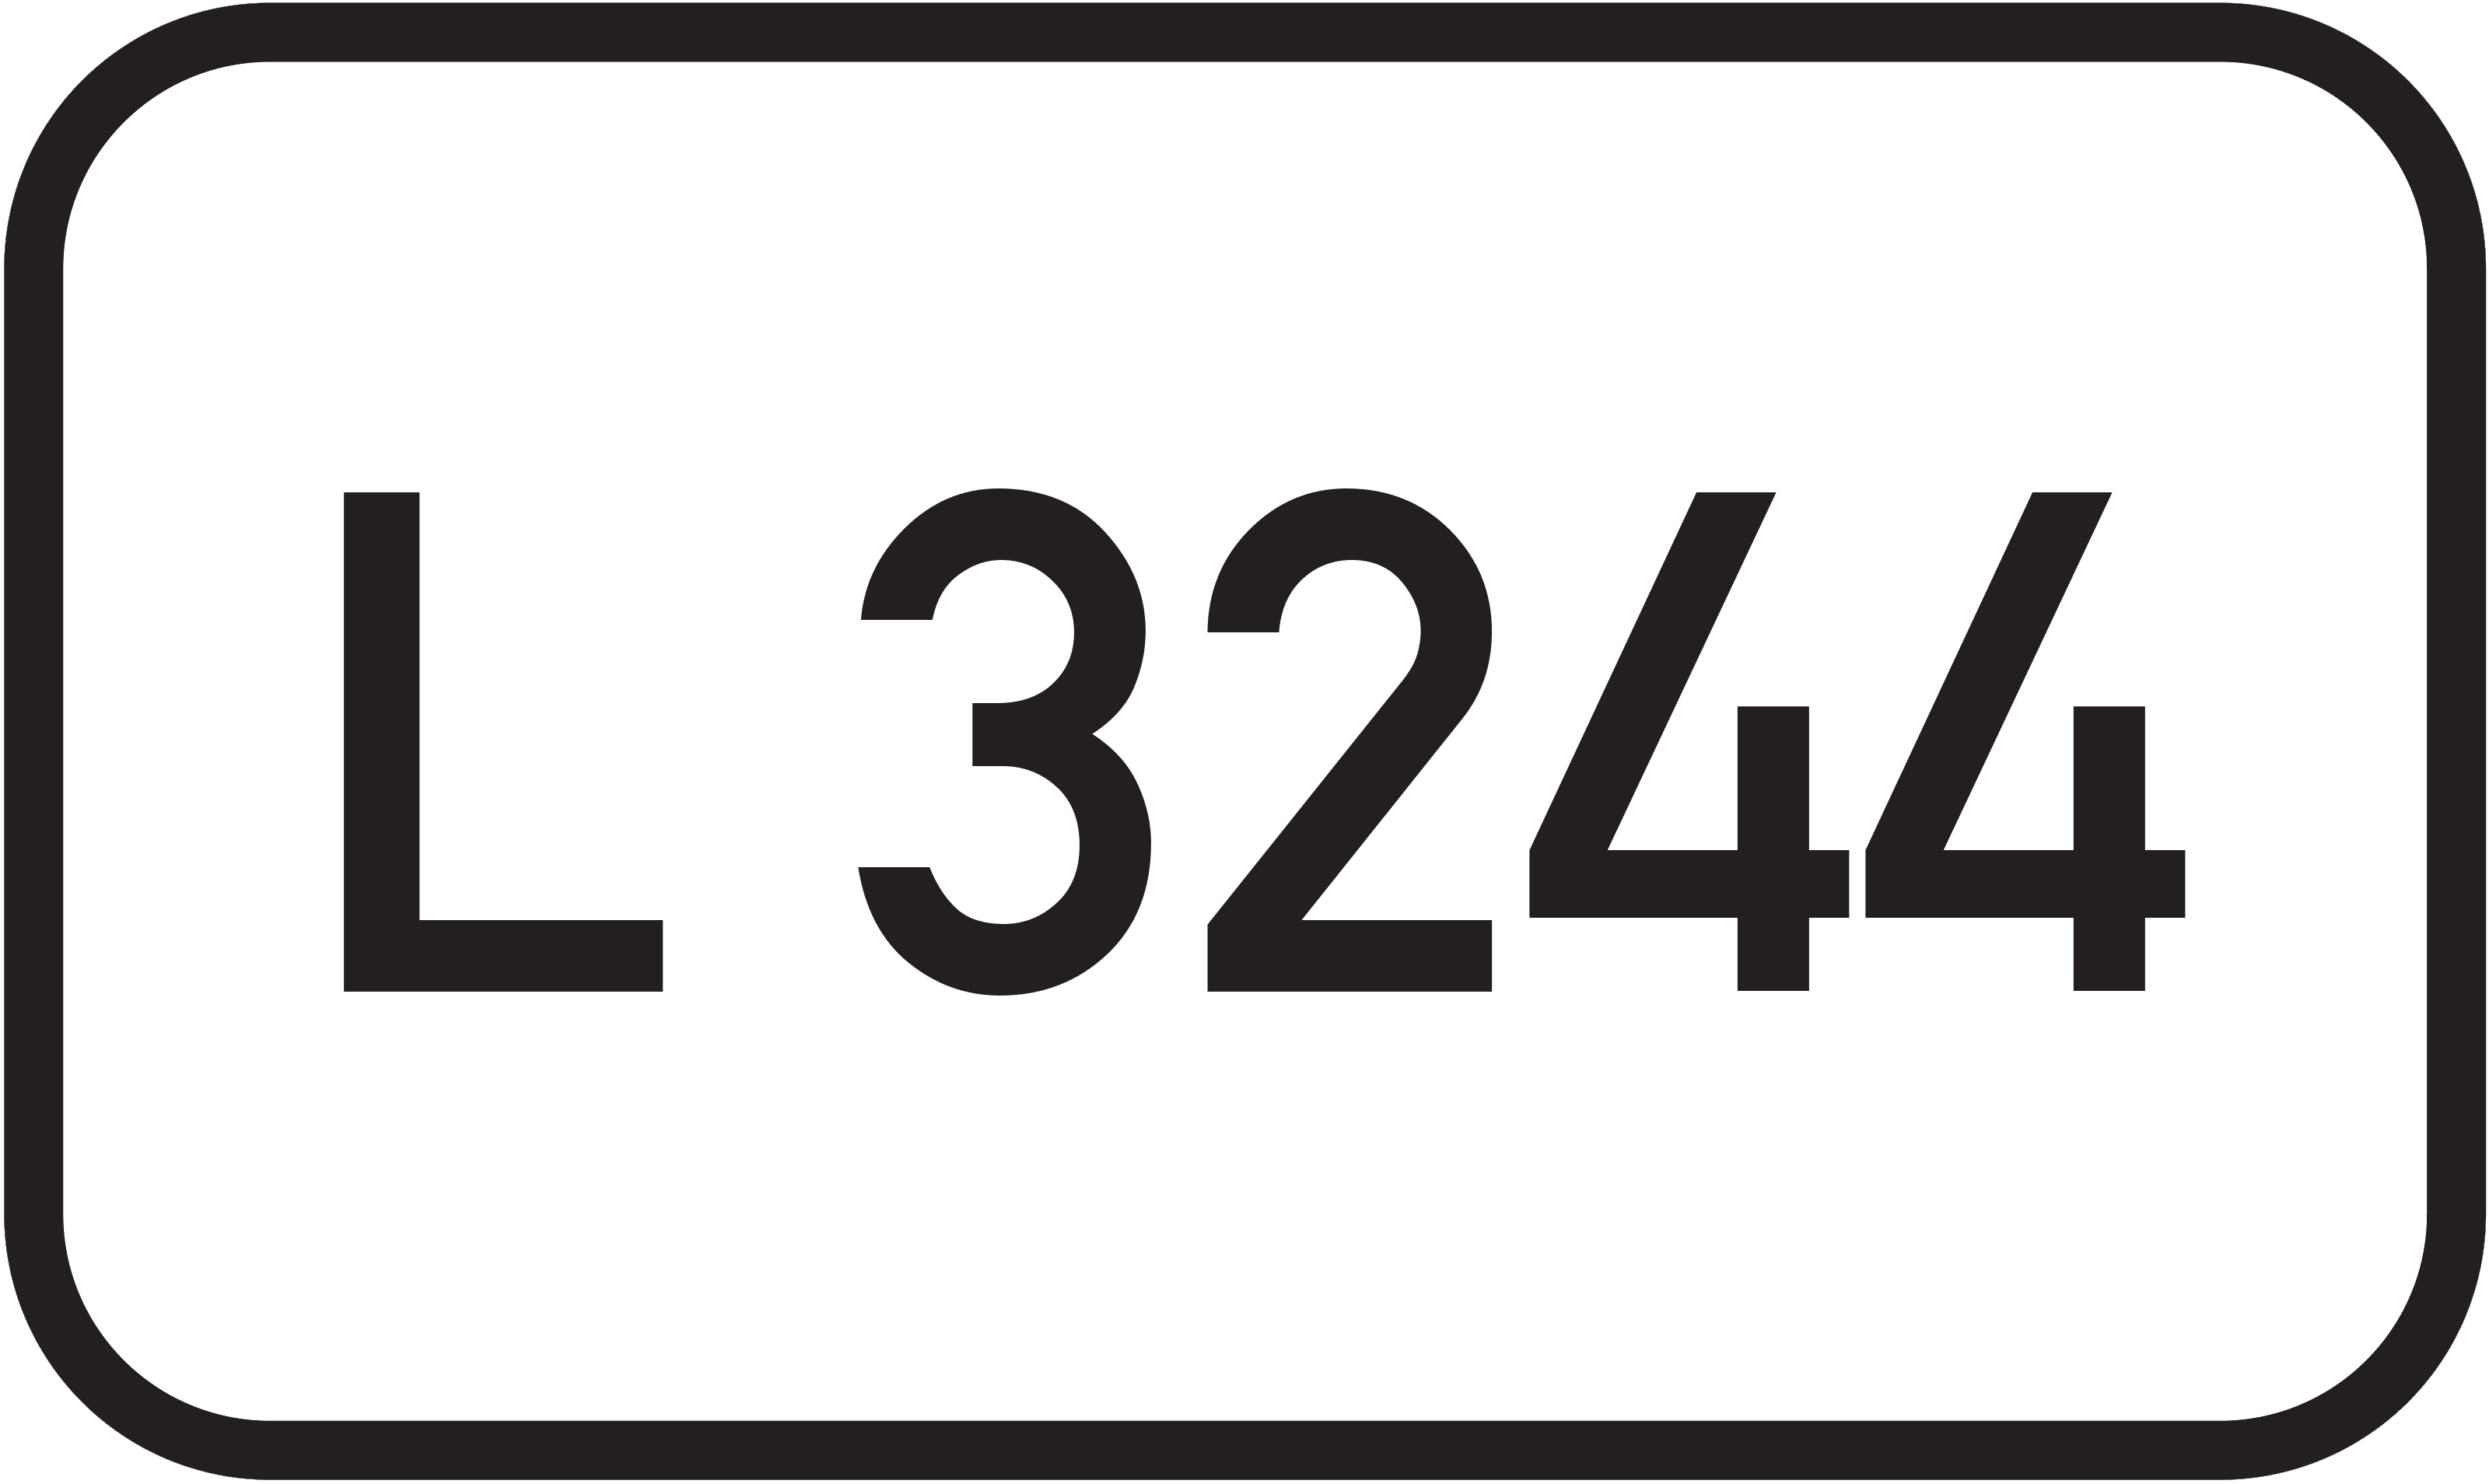 Landesstraße L 3244